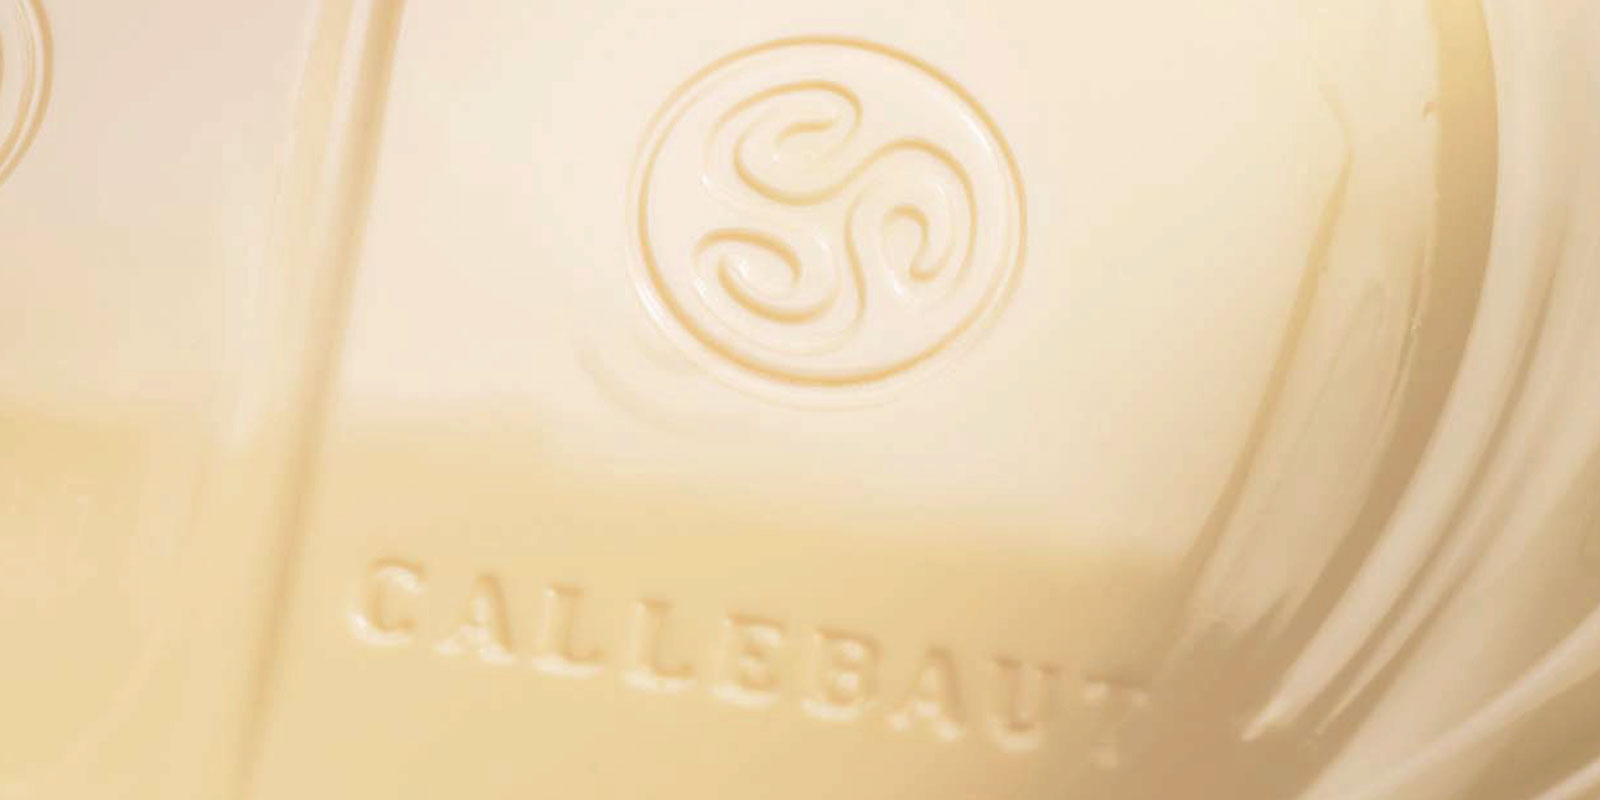 Biele cokolady od Callebaut Biela cokolada je vysledkom zmiesania kakaoveho masla, suseneho mlieka a cukru. Miesaci pomer tychto zloziek - napriklad vanilinu, vanilky alebo lecitinu - urcuje chut konecneho produktu.